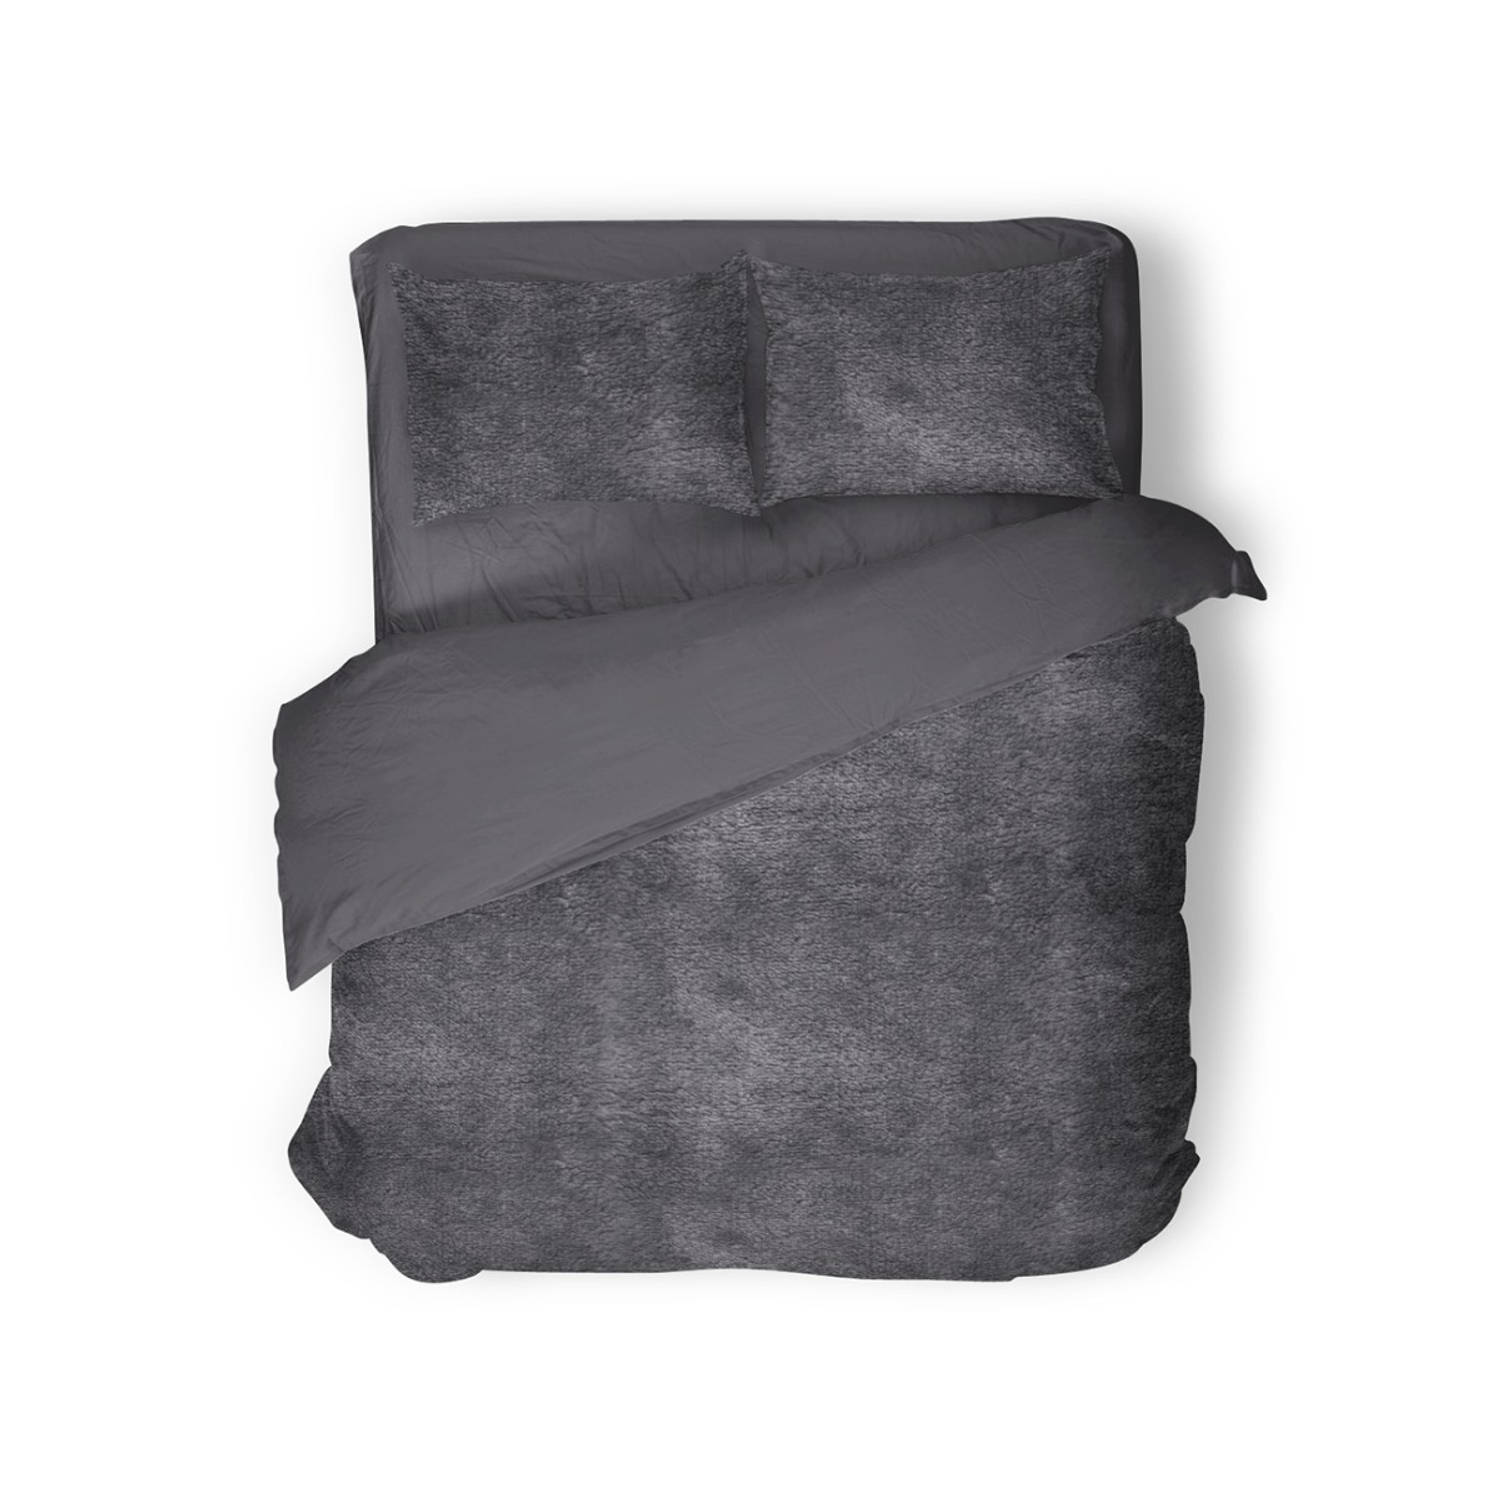 Eleganzzz Dekbedovertrek Flanel Fleece - Dark Grey - Dekbedovertrek 240x200/220cm - 100% flanel fleece - Lits Jumeaux dekbedovertrekken